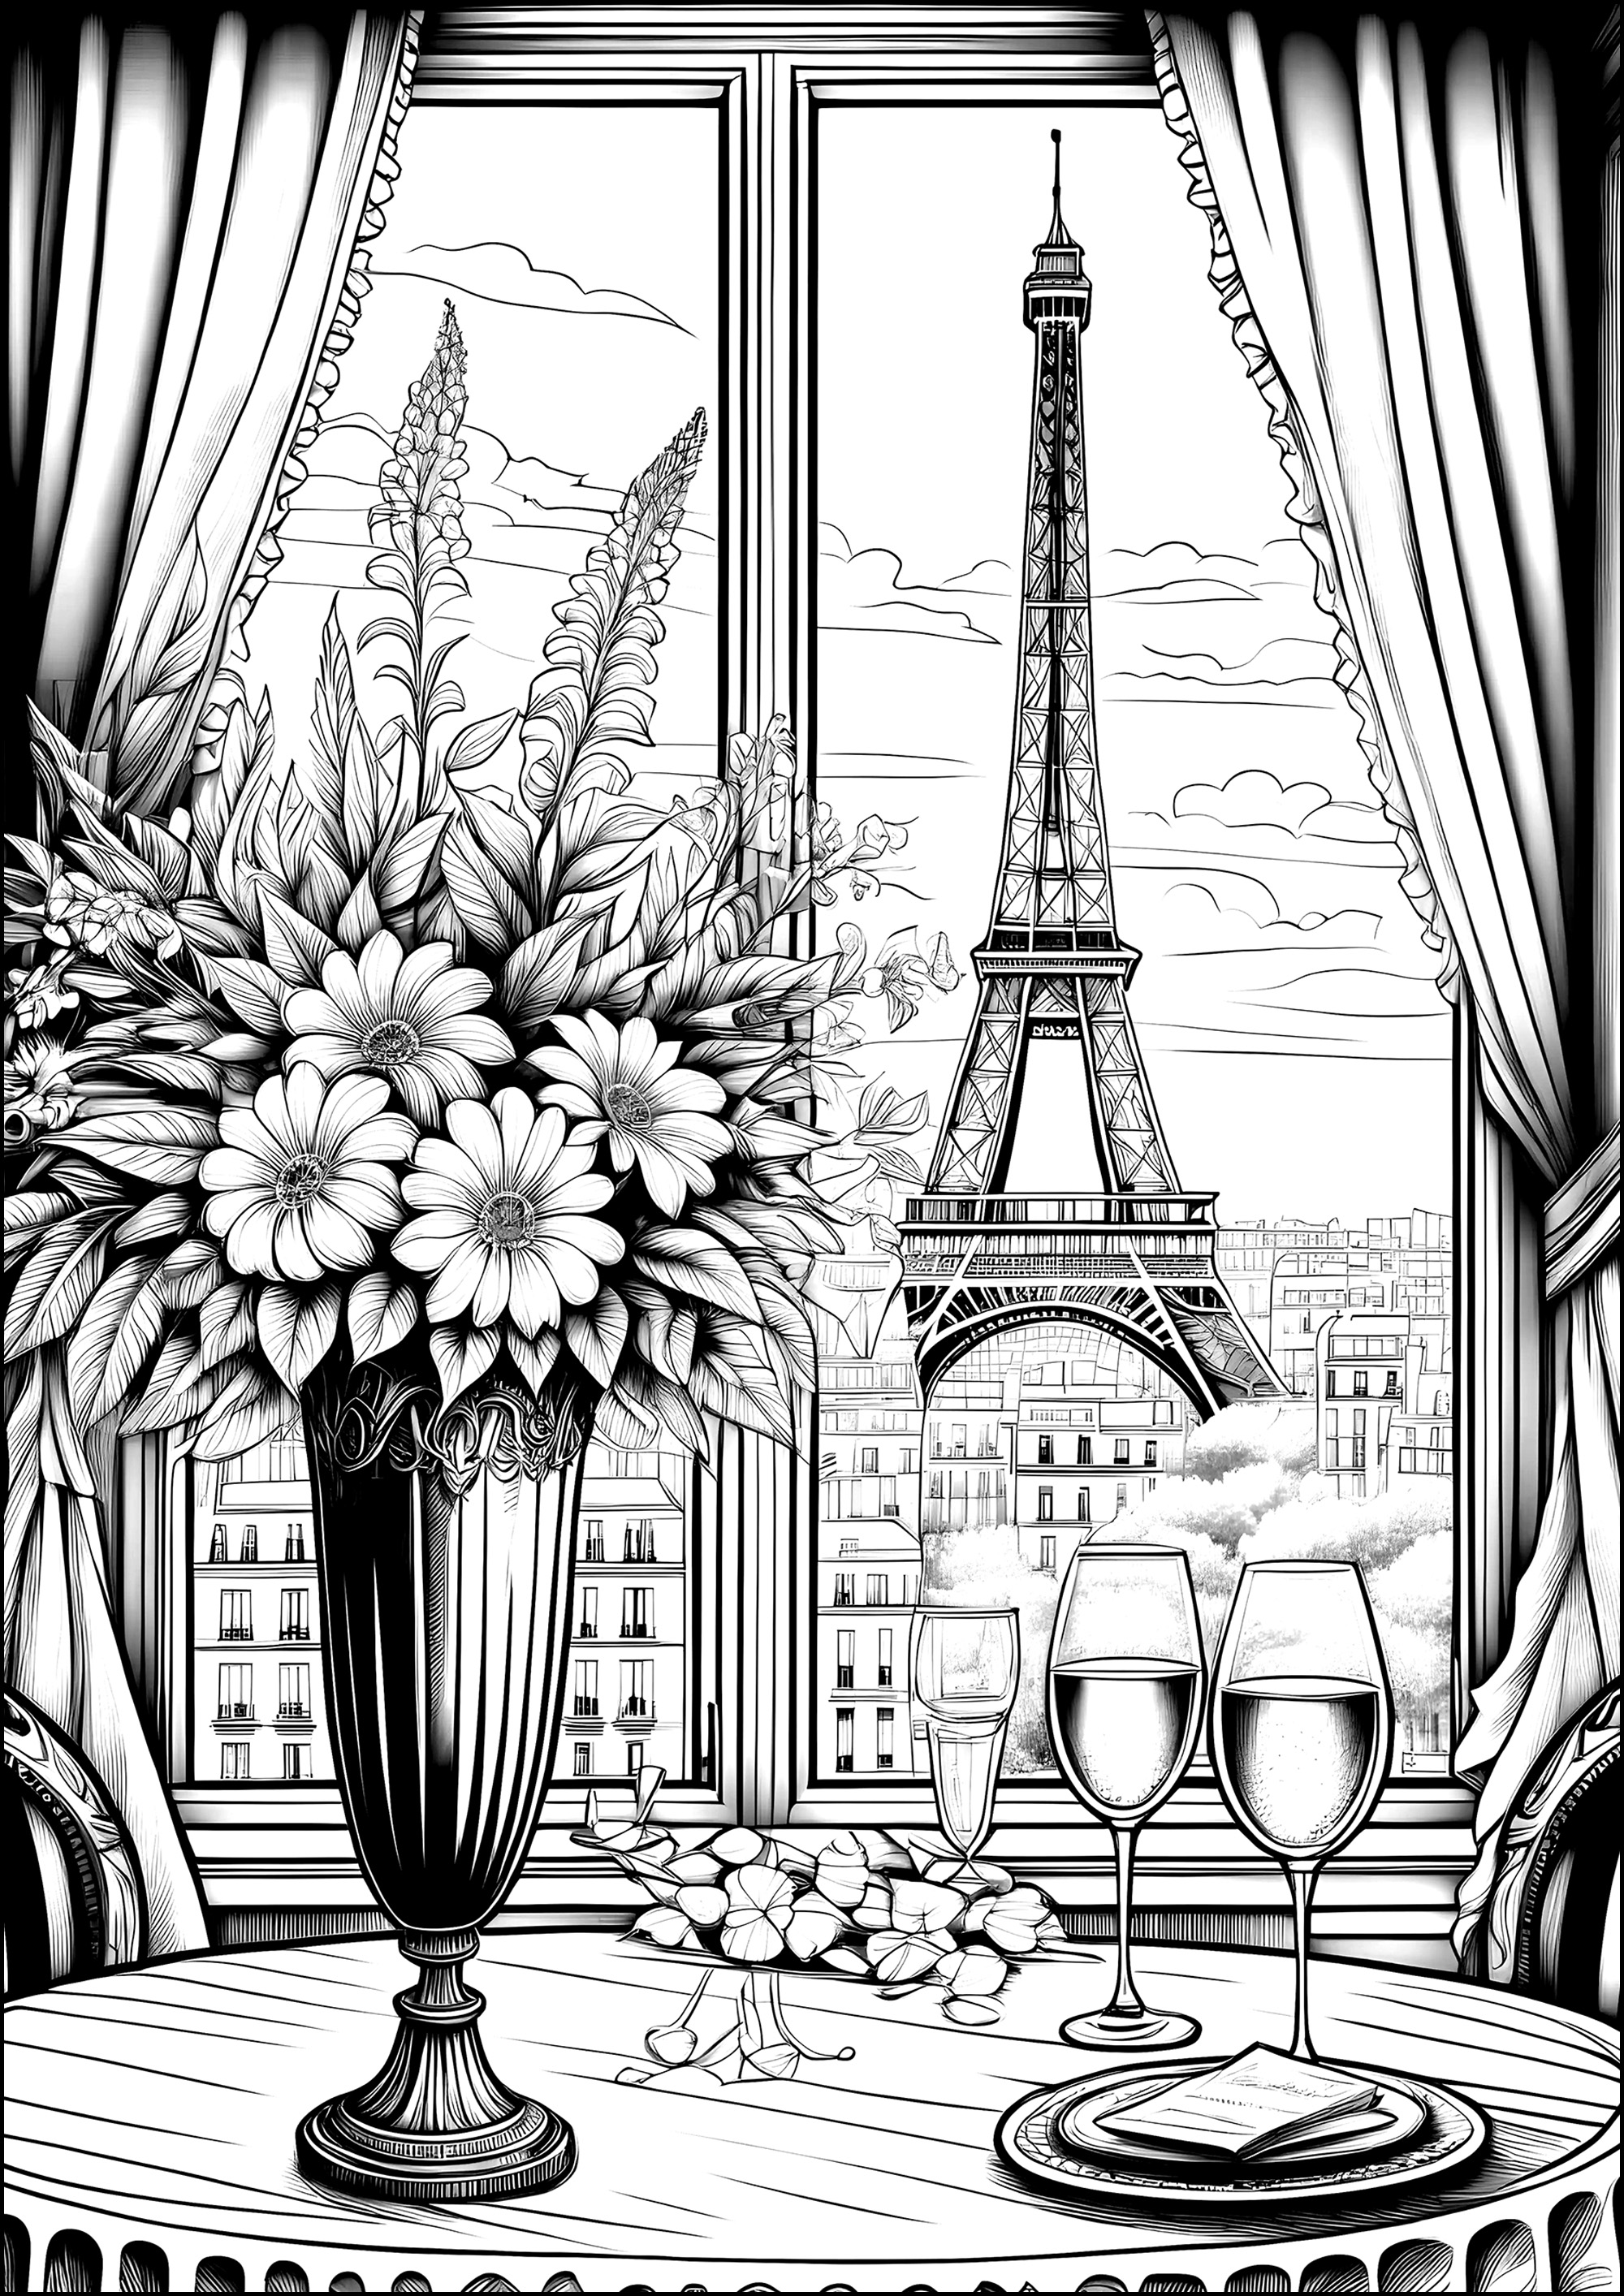 Fenster zu Paris: Champagner und der Eiffelturm. Mit einem Glas Champagner vor einem Fenster mit Blick auf den Eiffelturm anstoßen